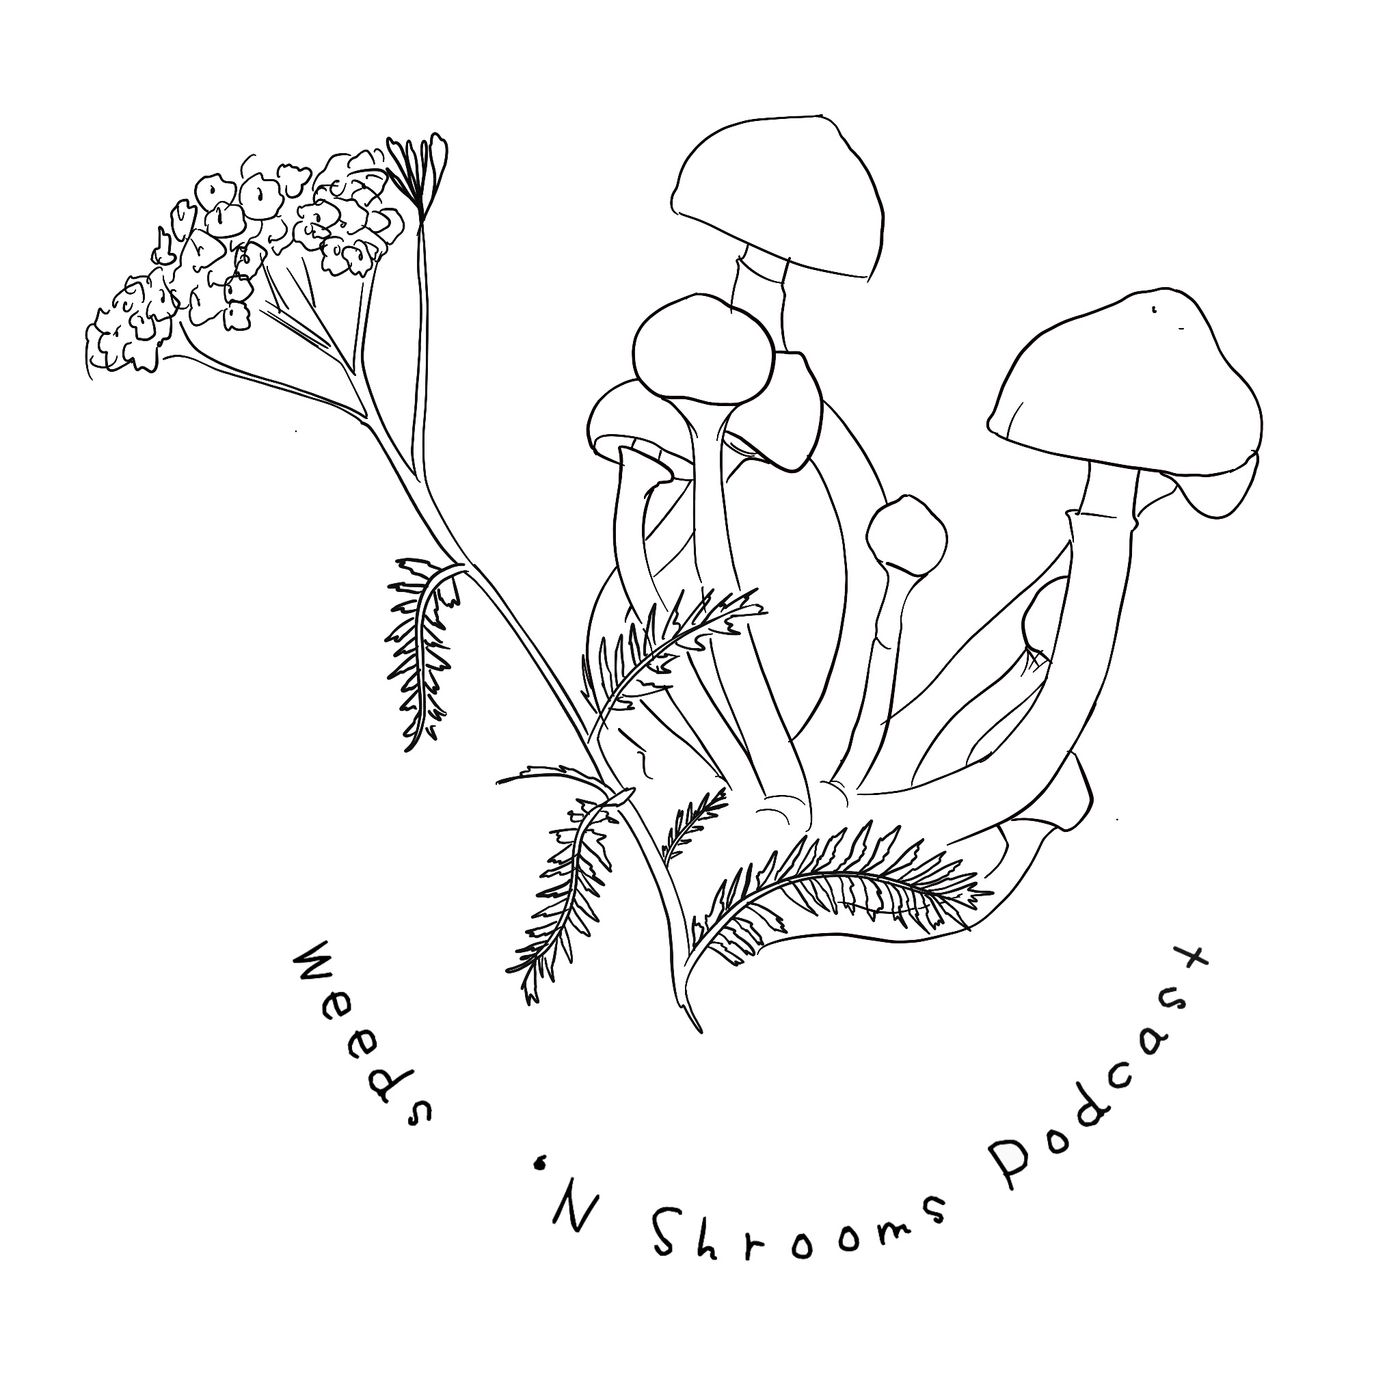 Weeds ‘N Shrooms